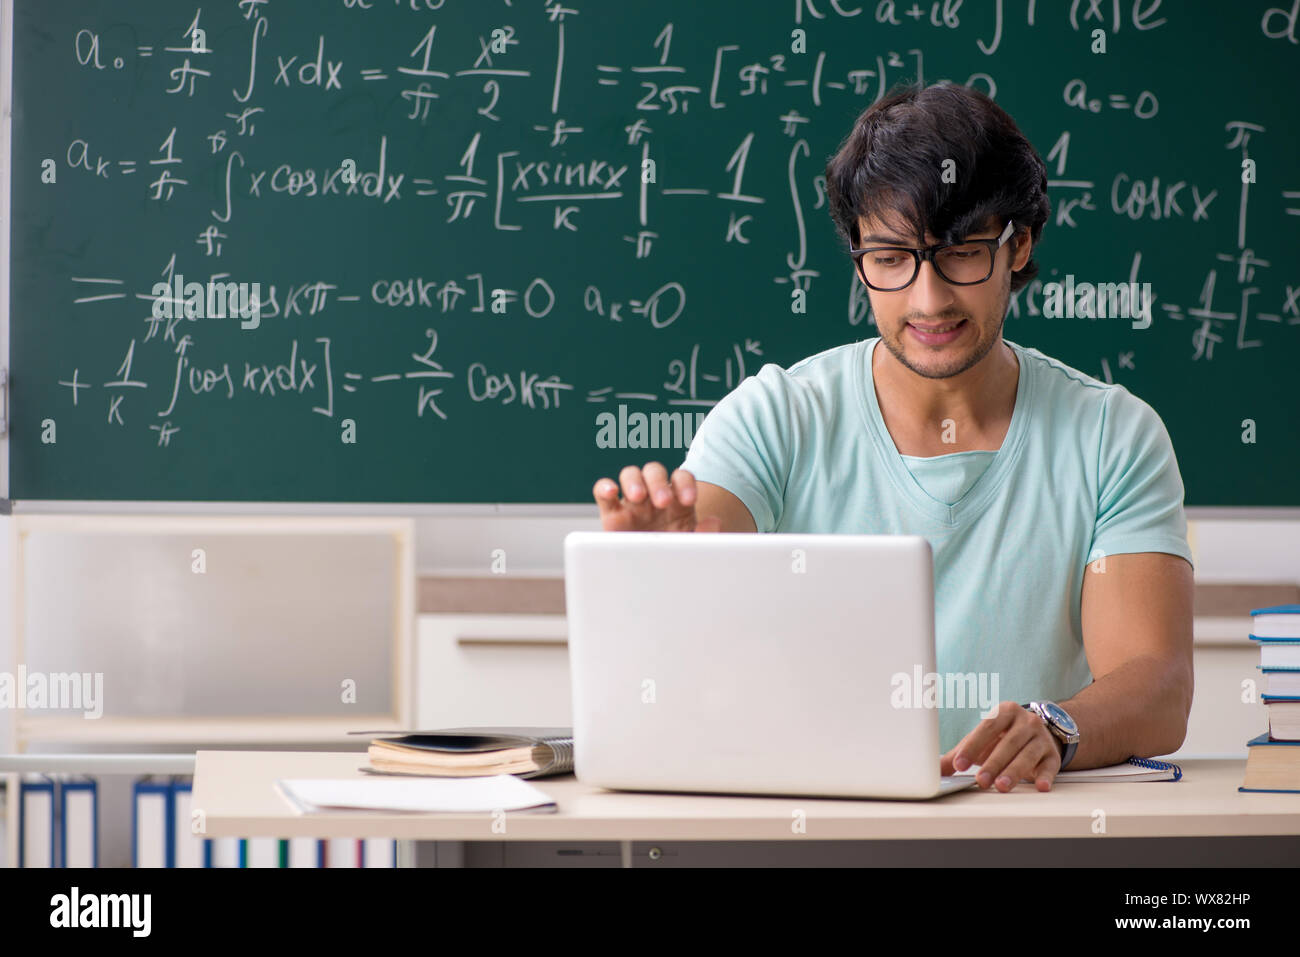 Young male student mathématicien en face de tableau Banque D'Images